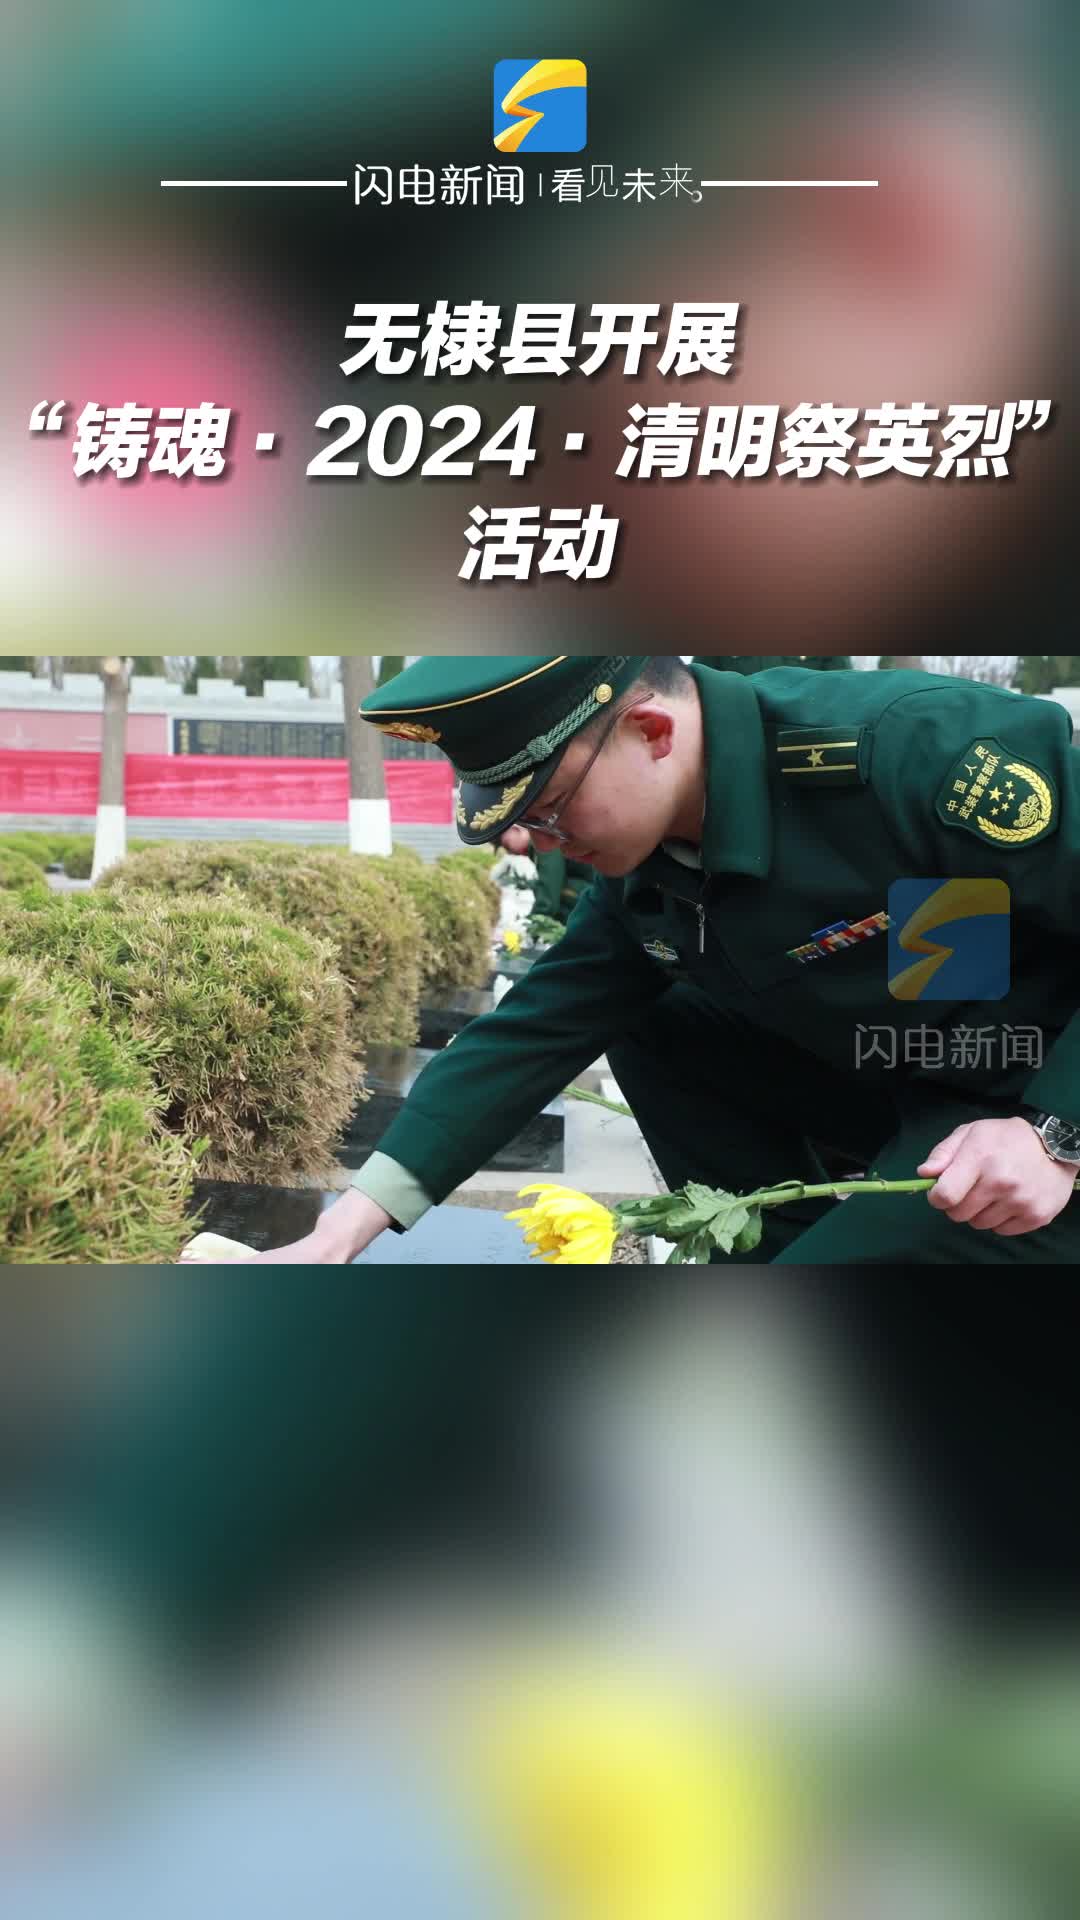 无棣县开展“铸魂·2024·清明祭英烈”活动